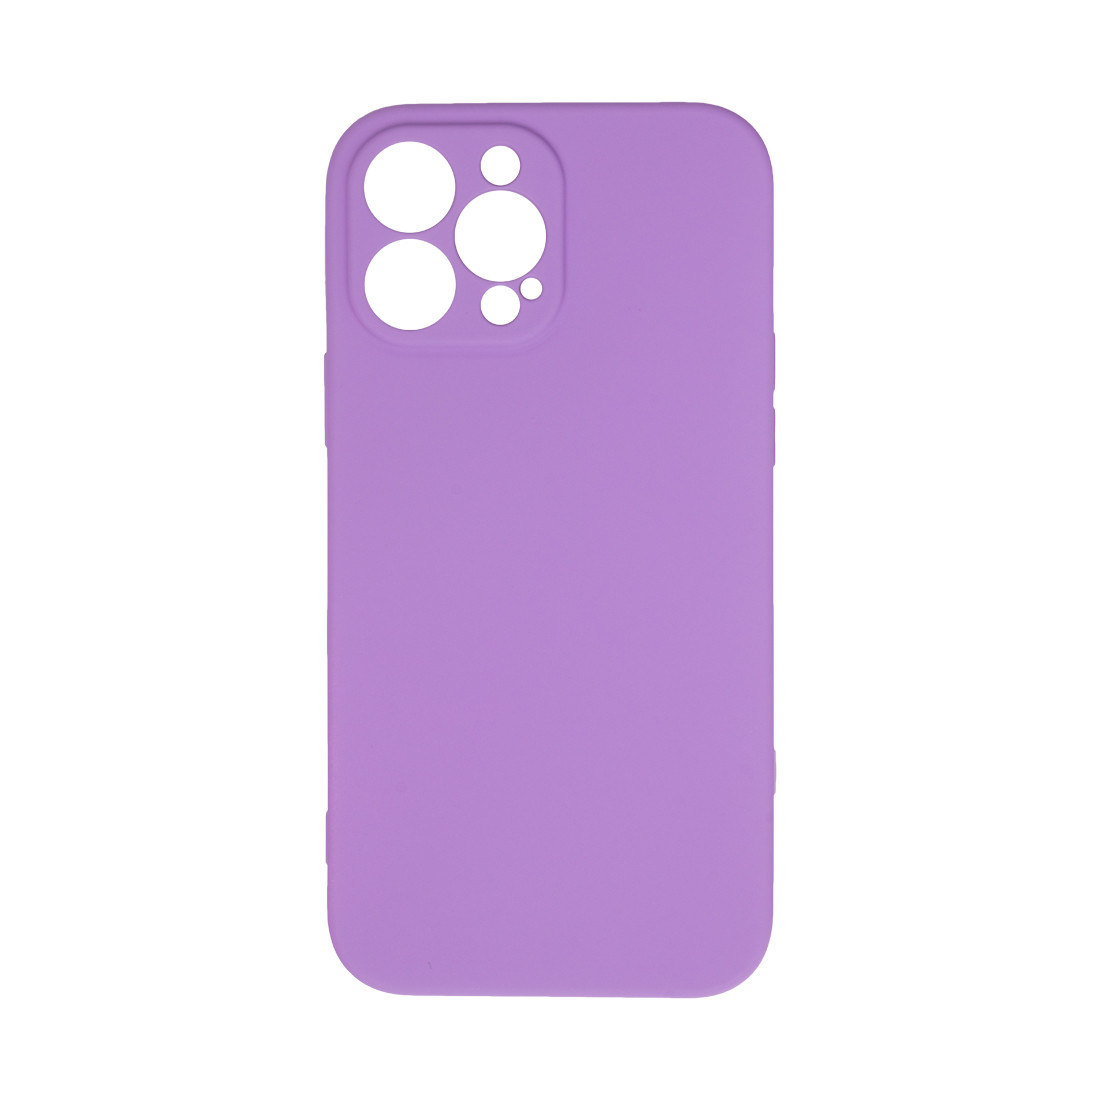 Чехол для телефона  X-Game  XG-HS75  для Iphone 13 Pro  Силиконовый  Фиолетовый  Пол. пакет